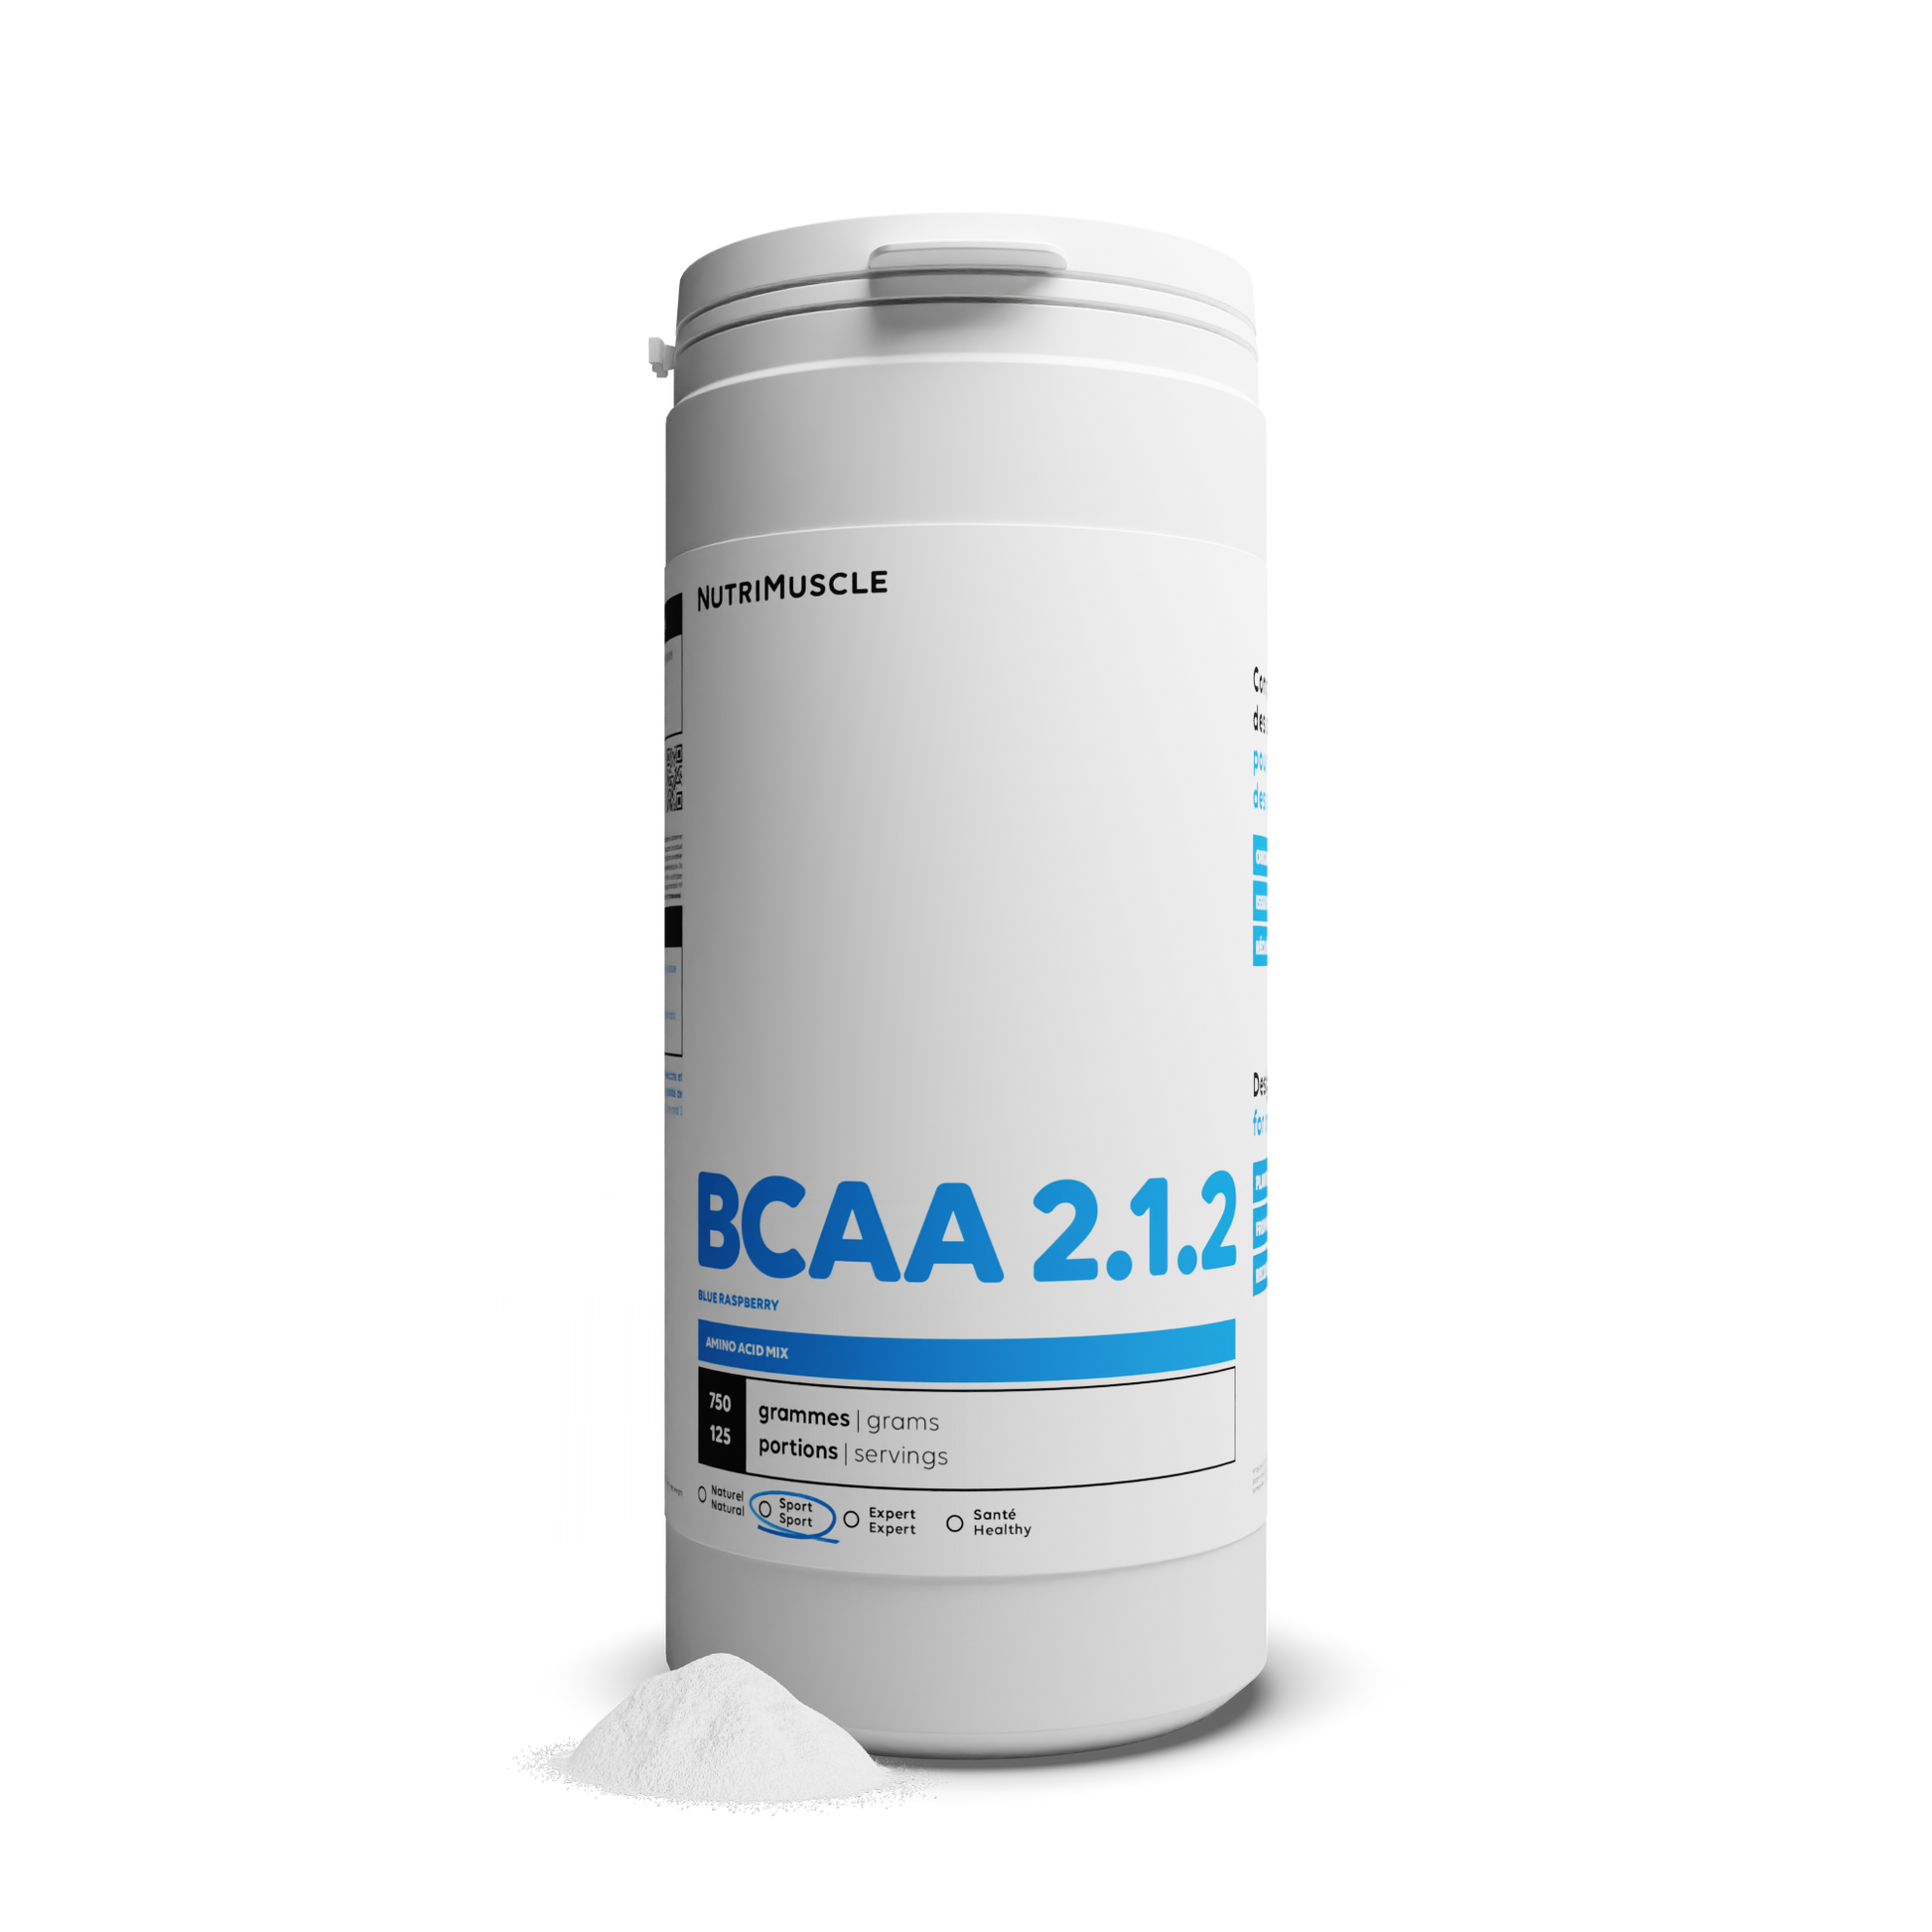 BCAA 2.1.2 Pulverfestigkeit